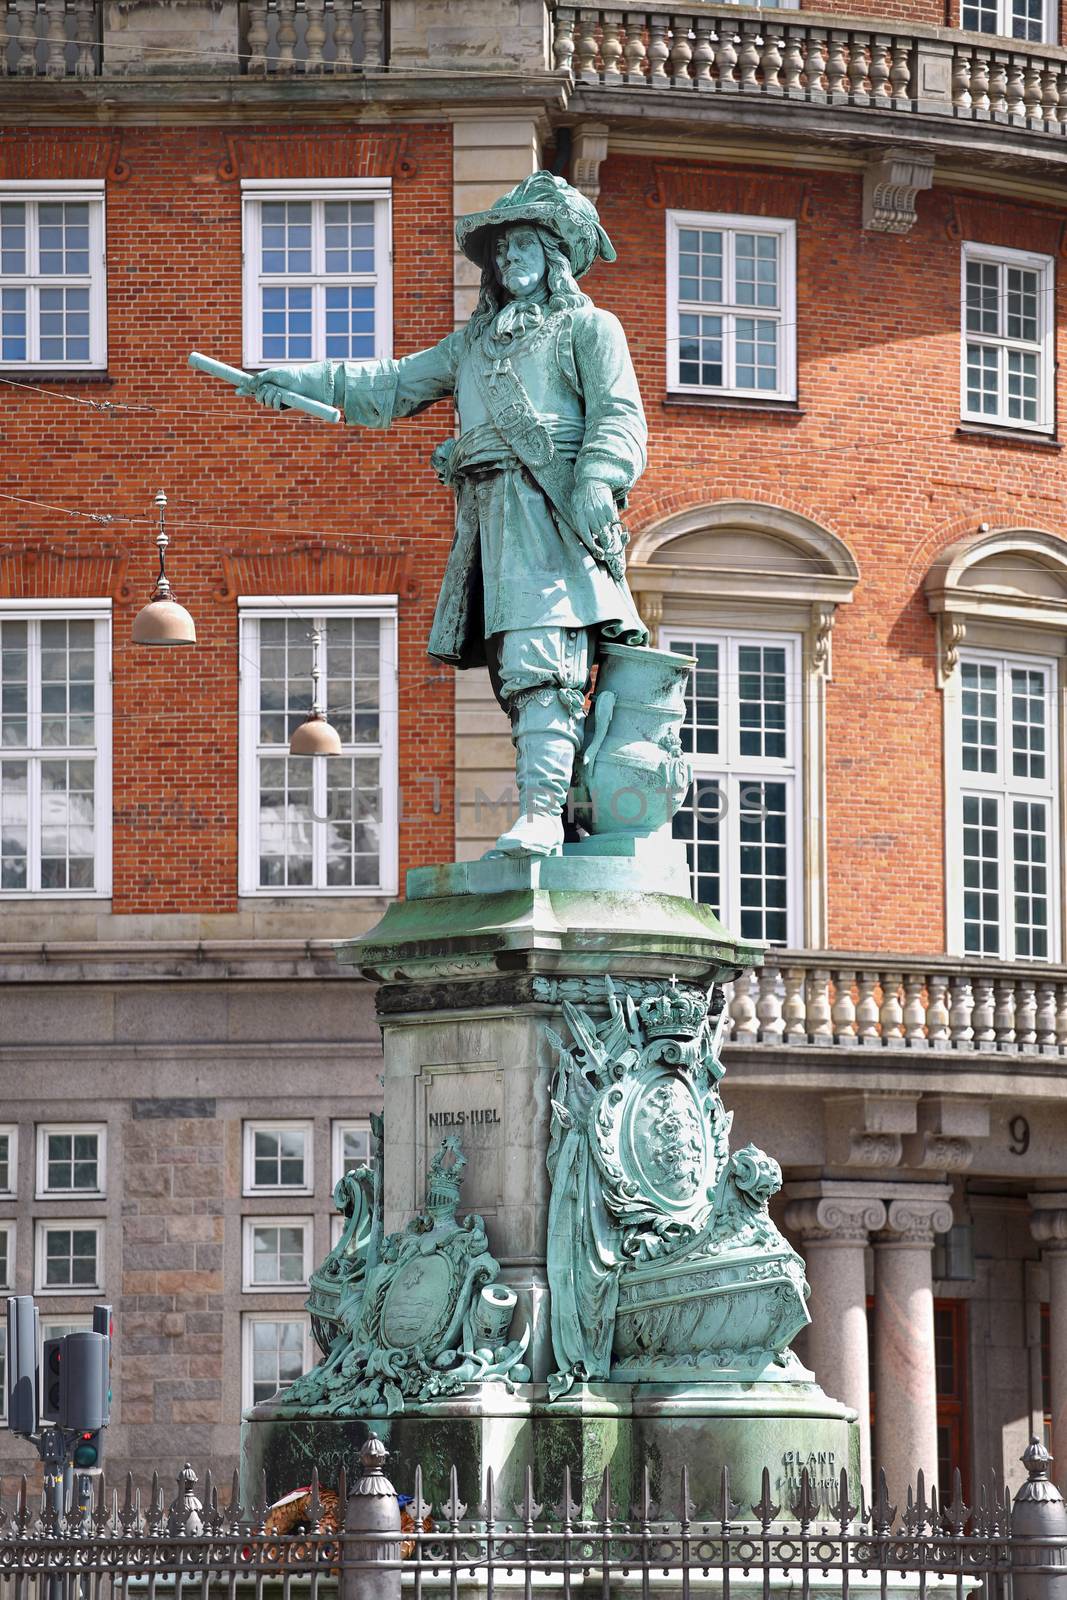  Statue Danish-Norwegian admiral Niels Juel in Copenhagen, Denmark